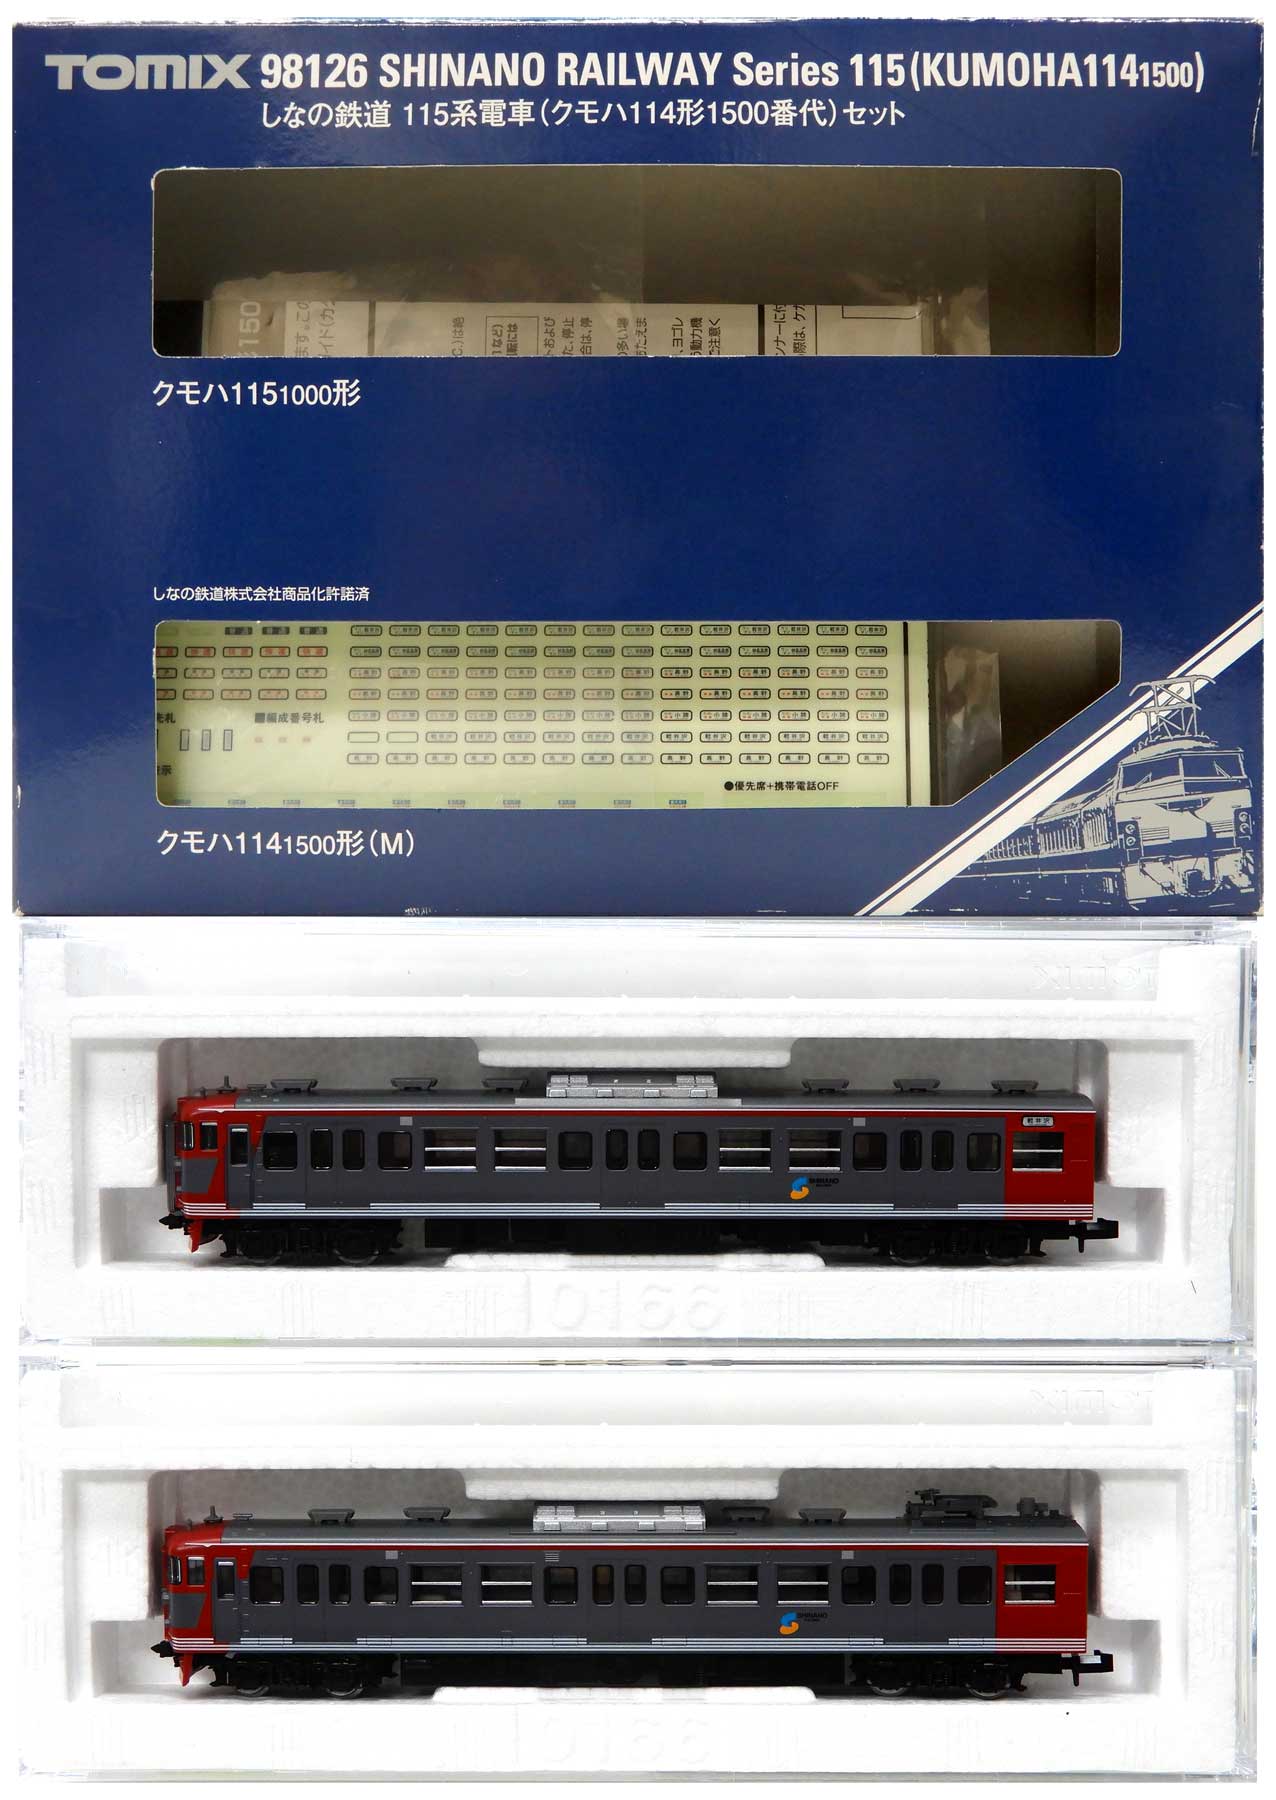 公式]鉄道模型(98126しなの鉄道115系電車(クモハ114形1500番代) 2両 